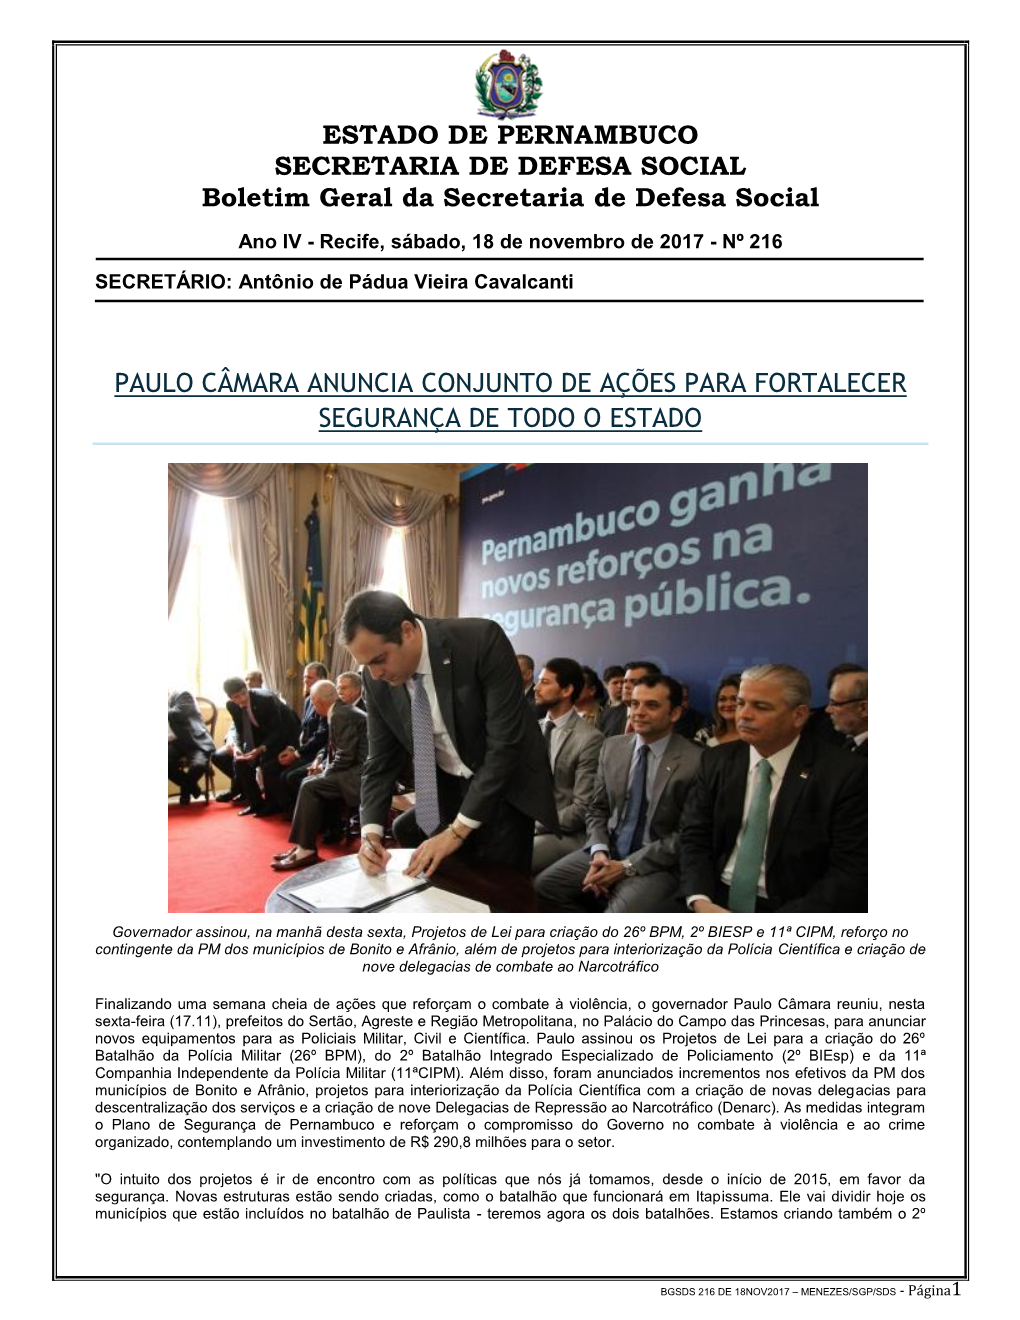 ESTADO DE PERNAMBUCO SECRETARIA DE DEFESA SOCIAL Boletim Geral Da Secretaria De Defesa Social